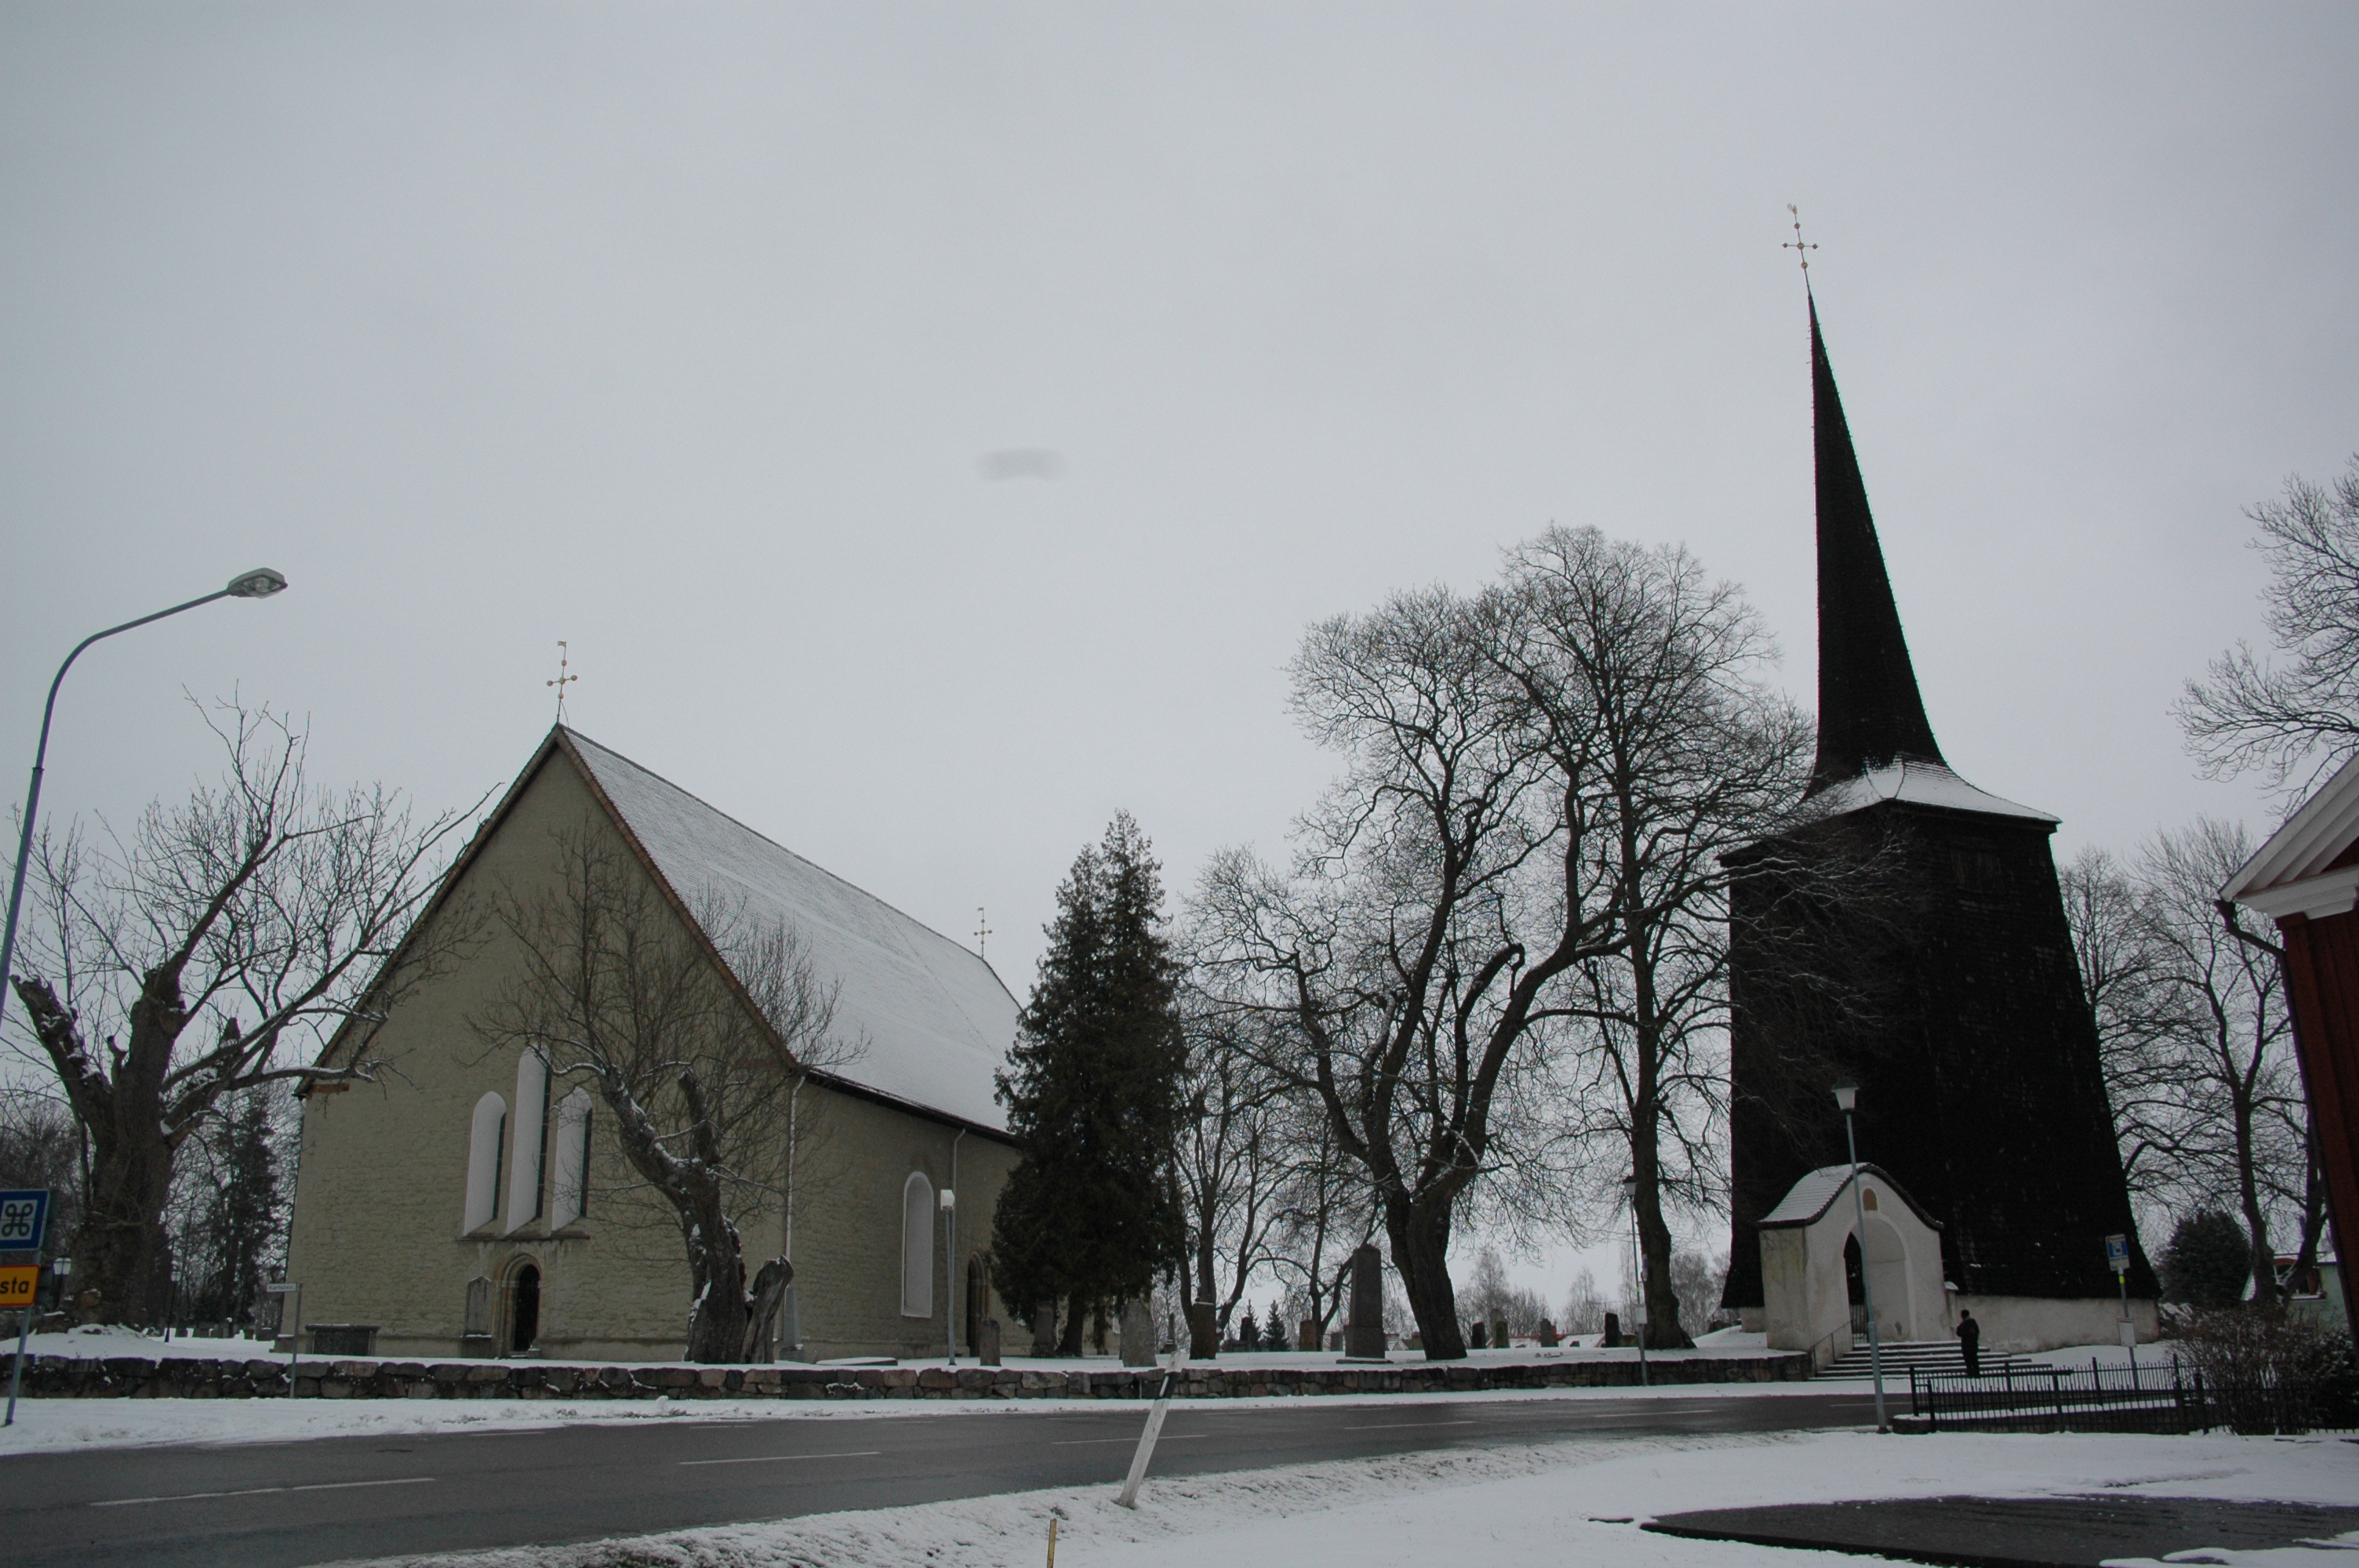 Sköllersta kyrka, kyrkan från sydväst